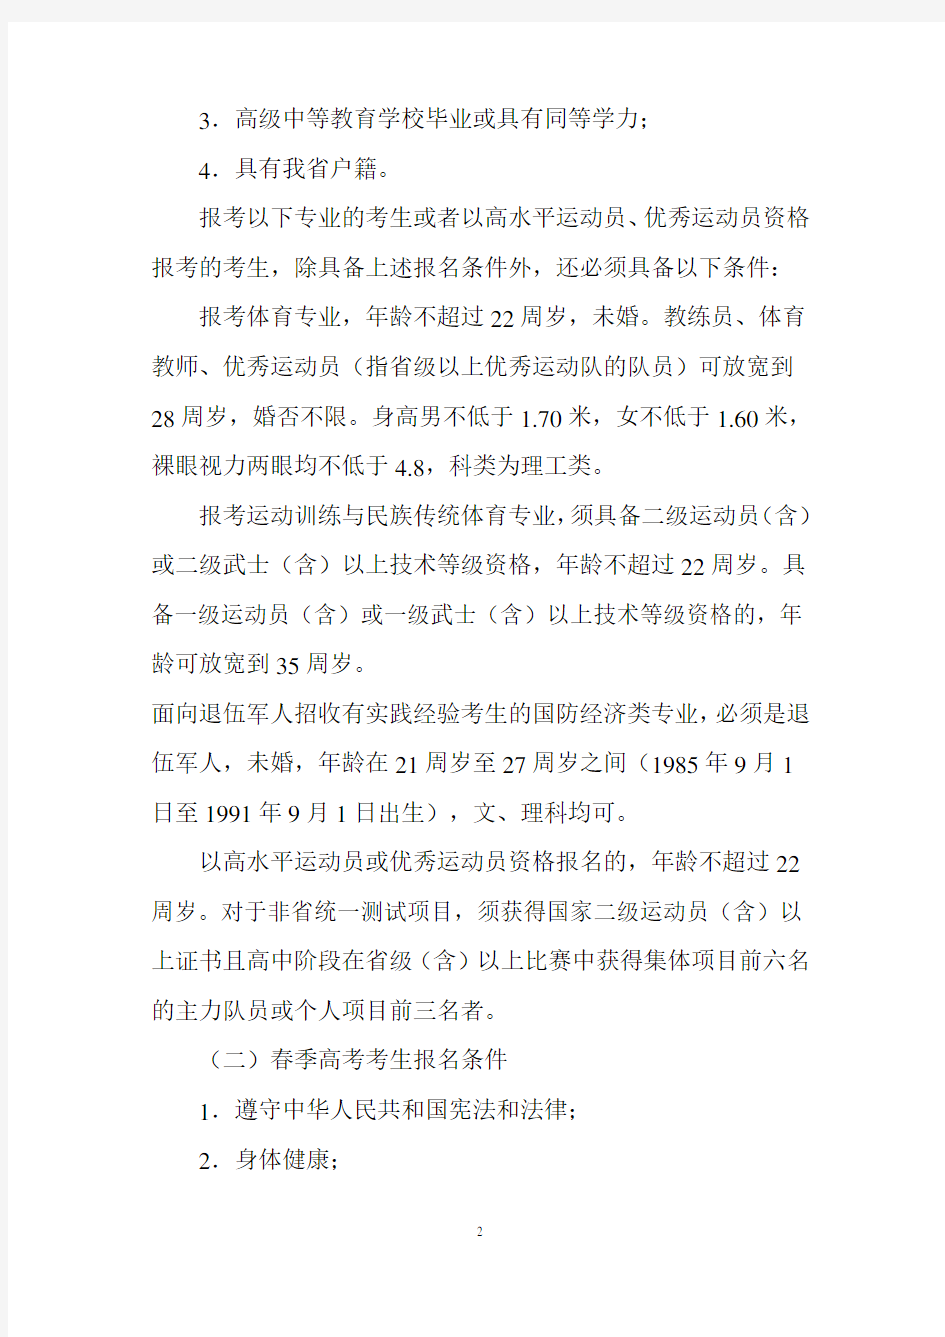 鲁招考〔2011〕95号 关于做好山东省2012年普通高等学校招生报名工作的通知